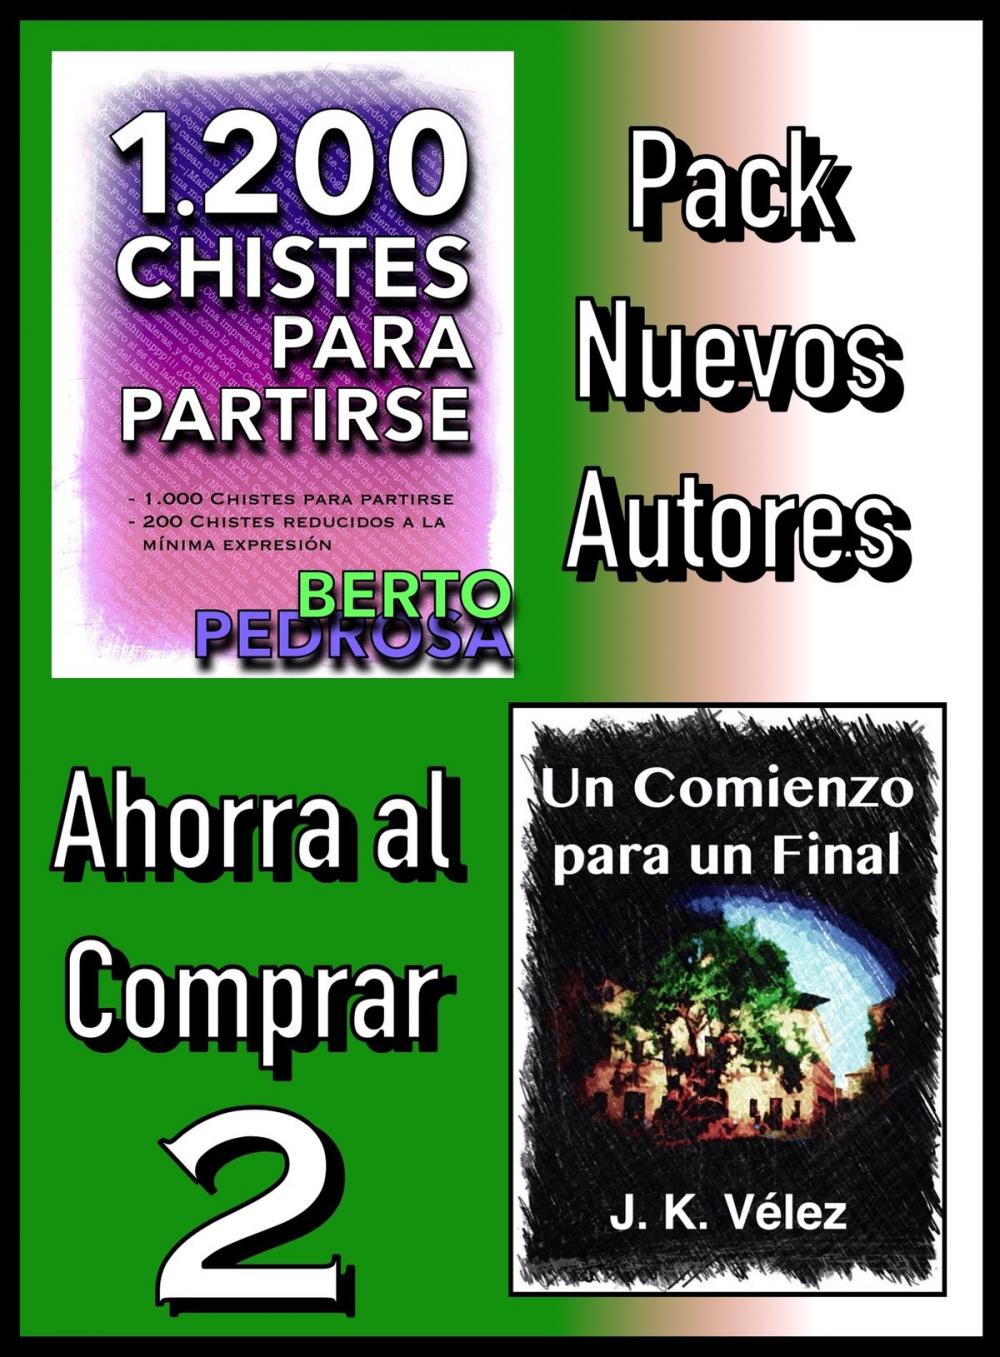 Big bigCover of Pack Nuevos Autores Ahorra al Comprar 2: 1200 Chistes para partirse, de Berto Pedrosa & Un Comienzo para un Final, de J. K. Vélez